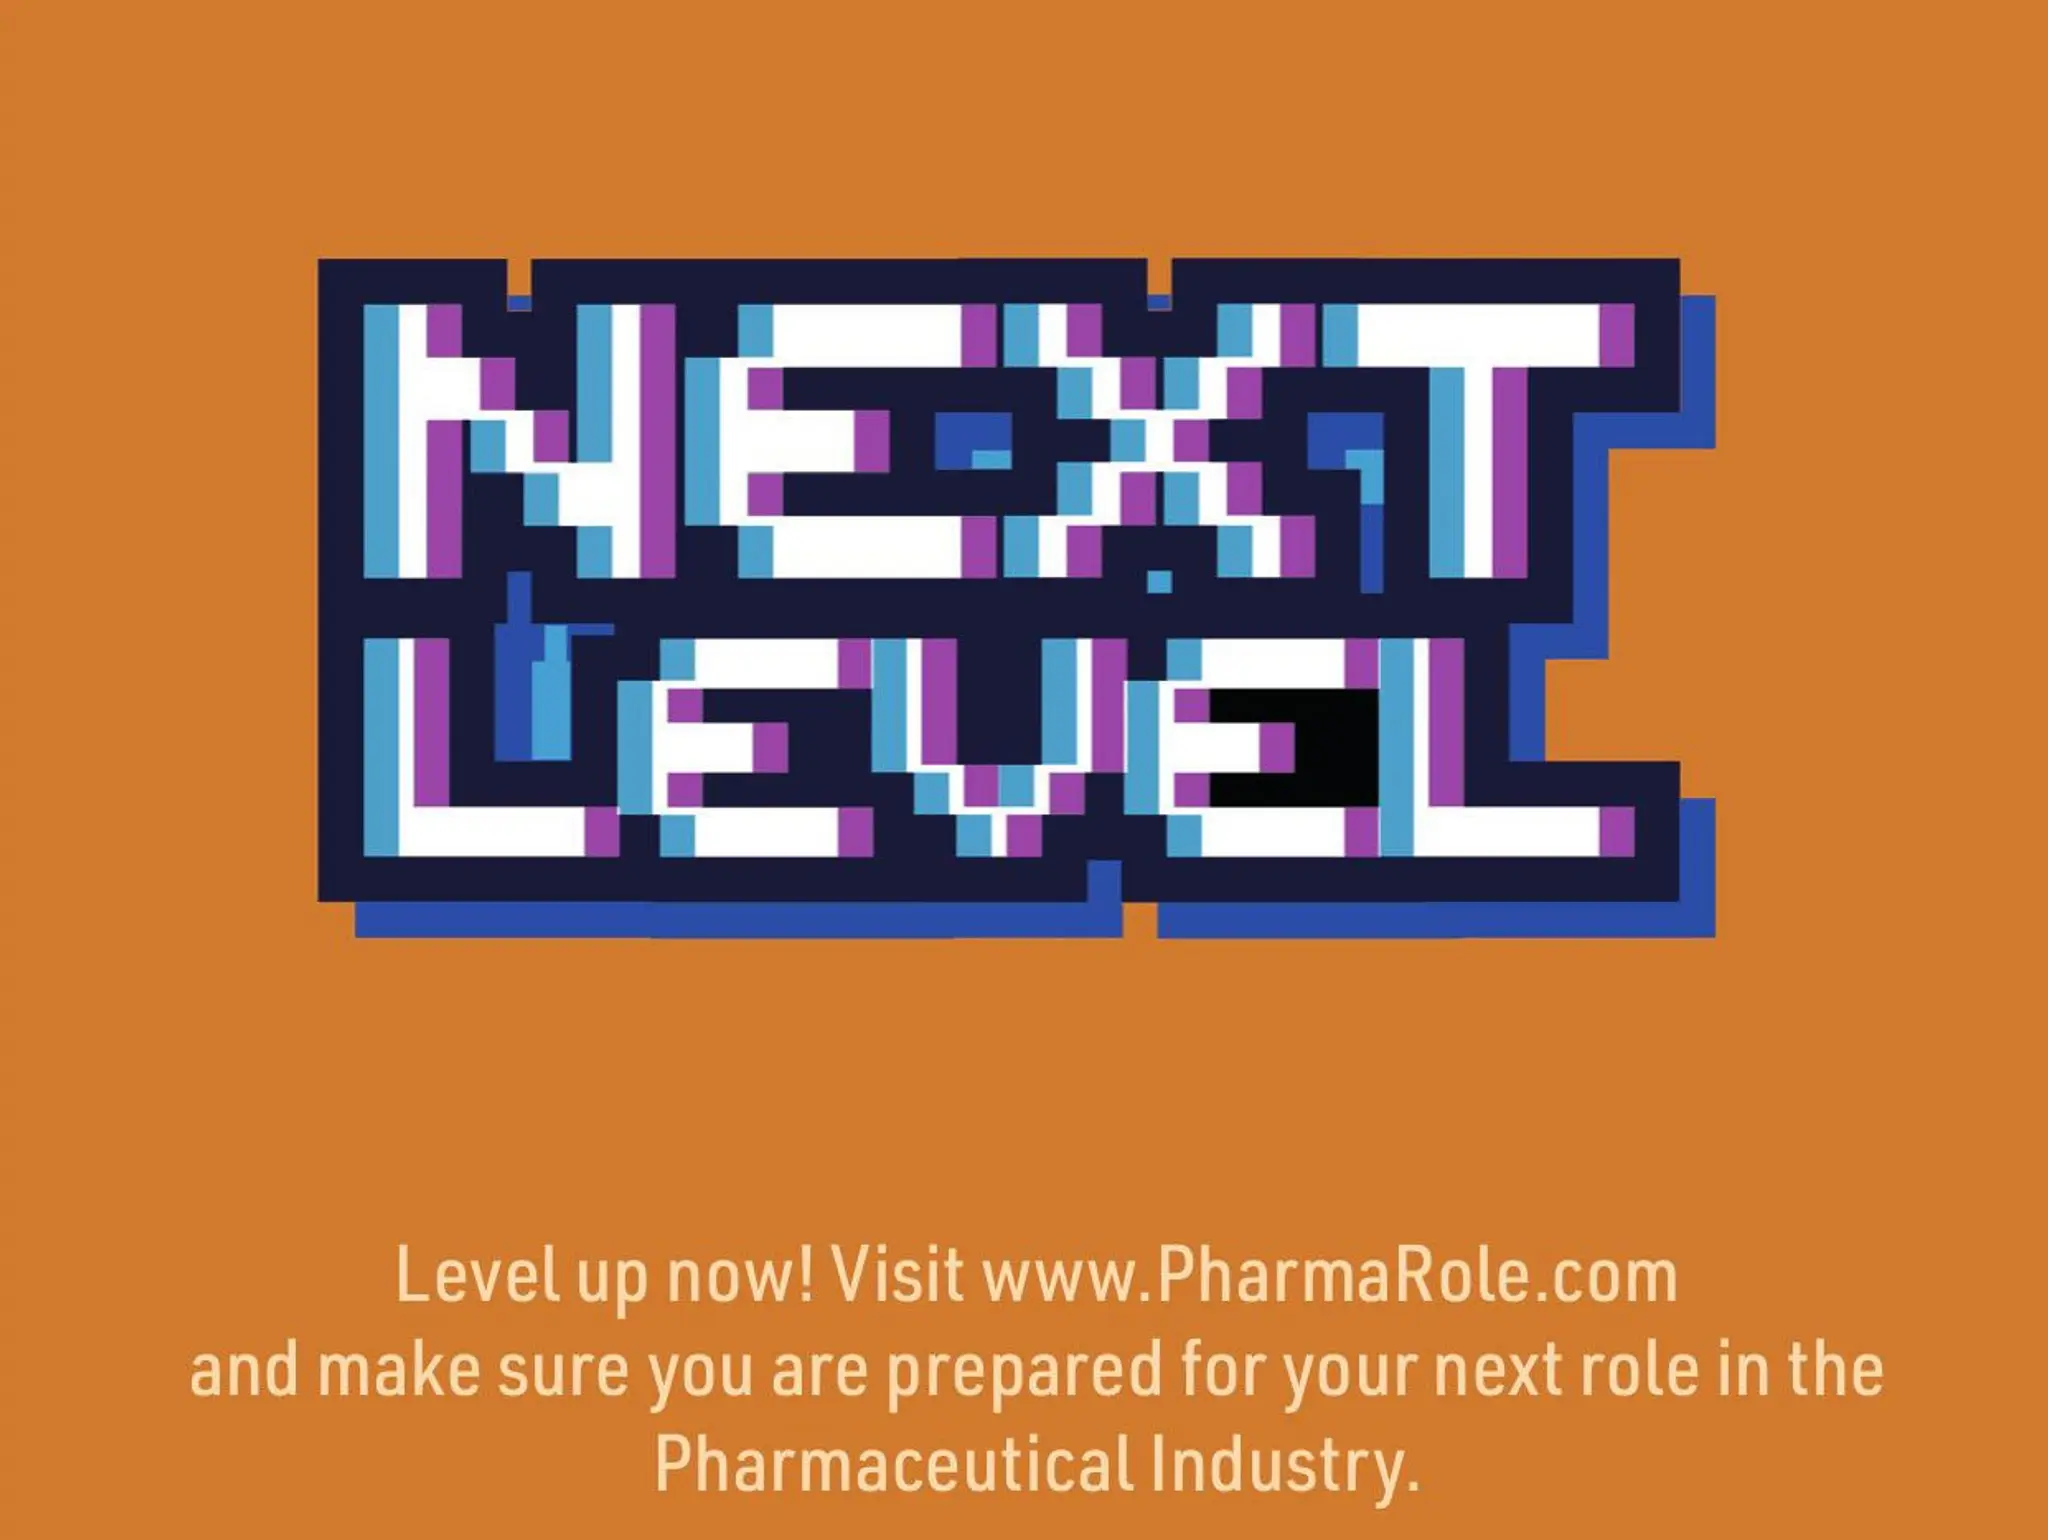 Pharma Role